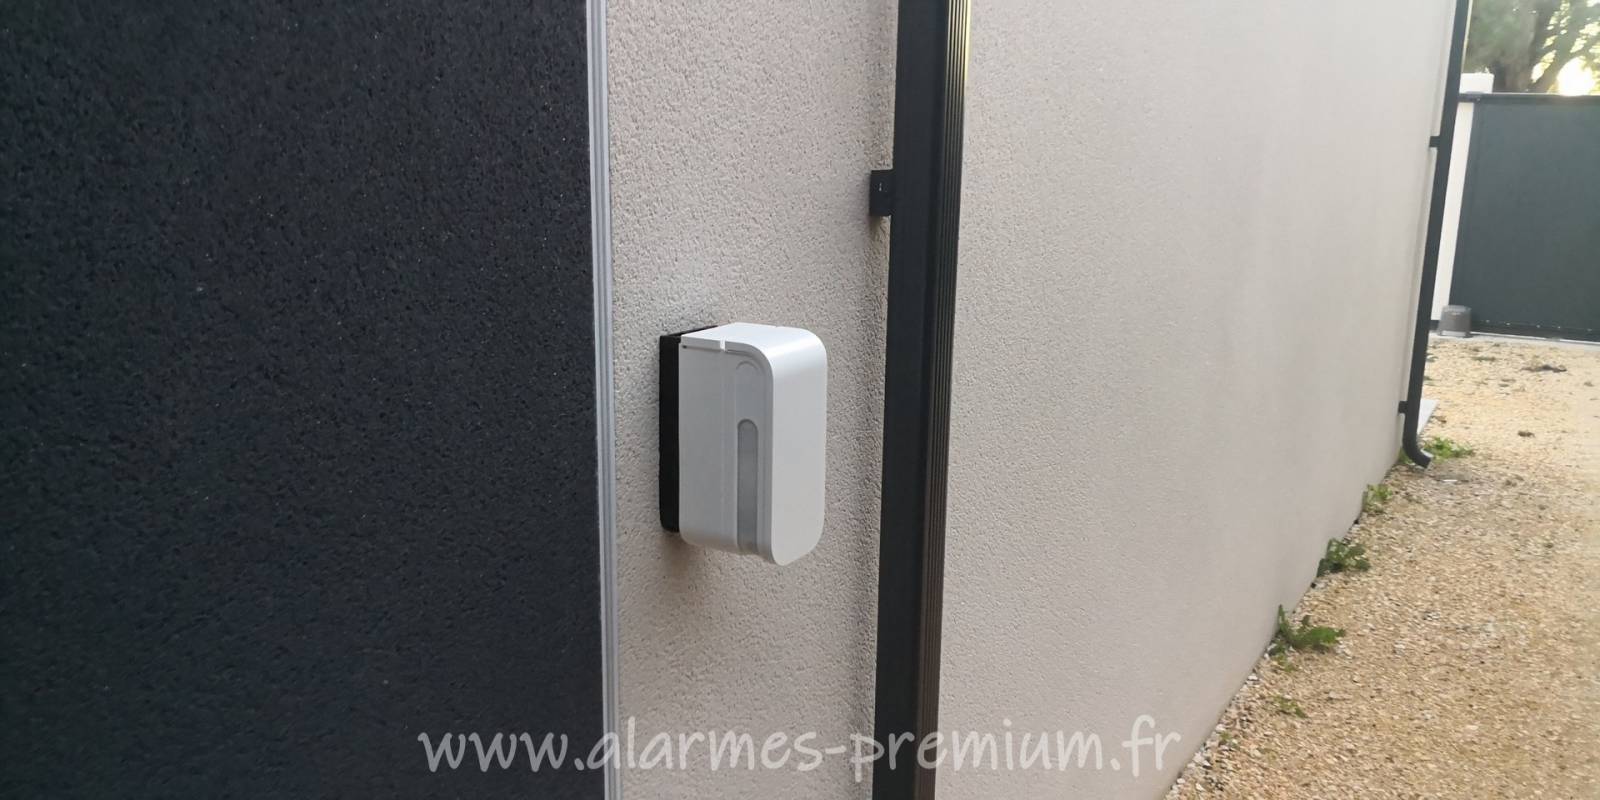 Vente et installation d'une alarme sans fil  avec détection extérieure pour villa à Garons dans le 30 par Alarmes Premium